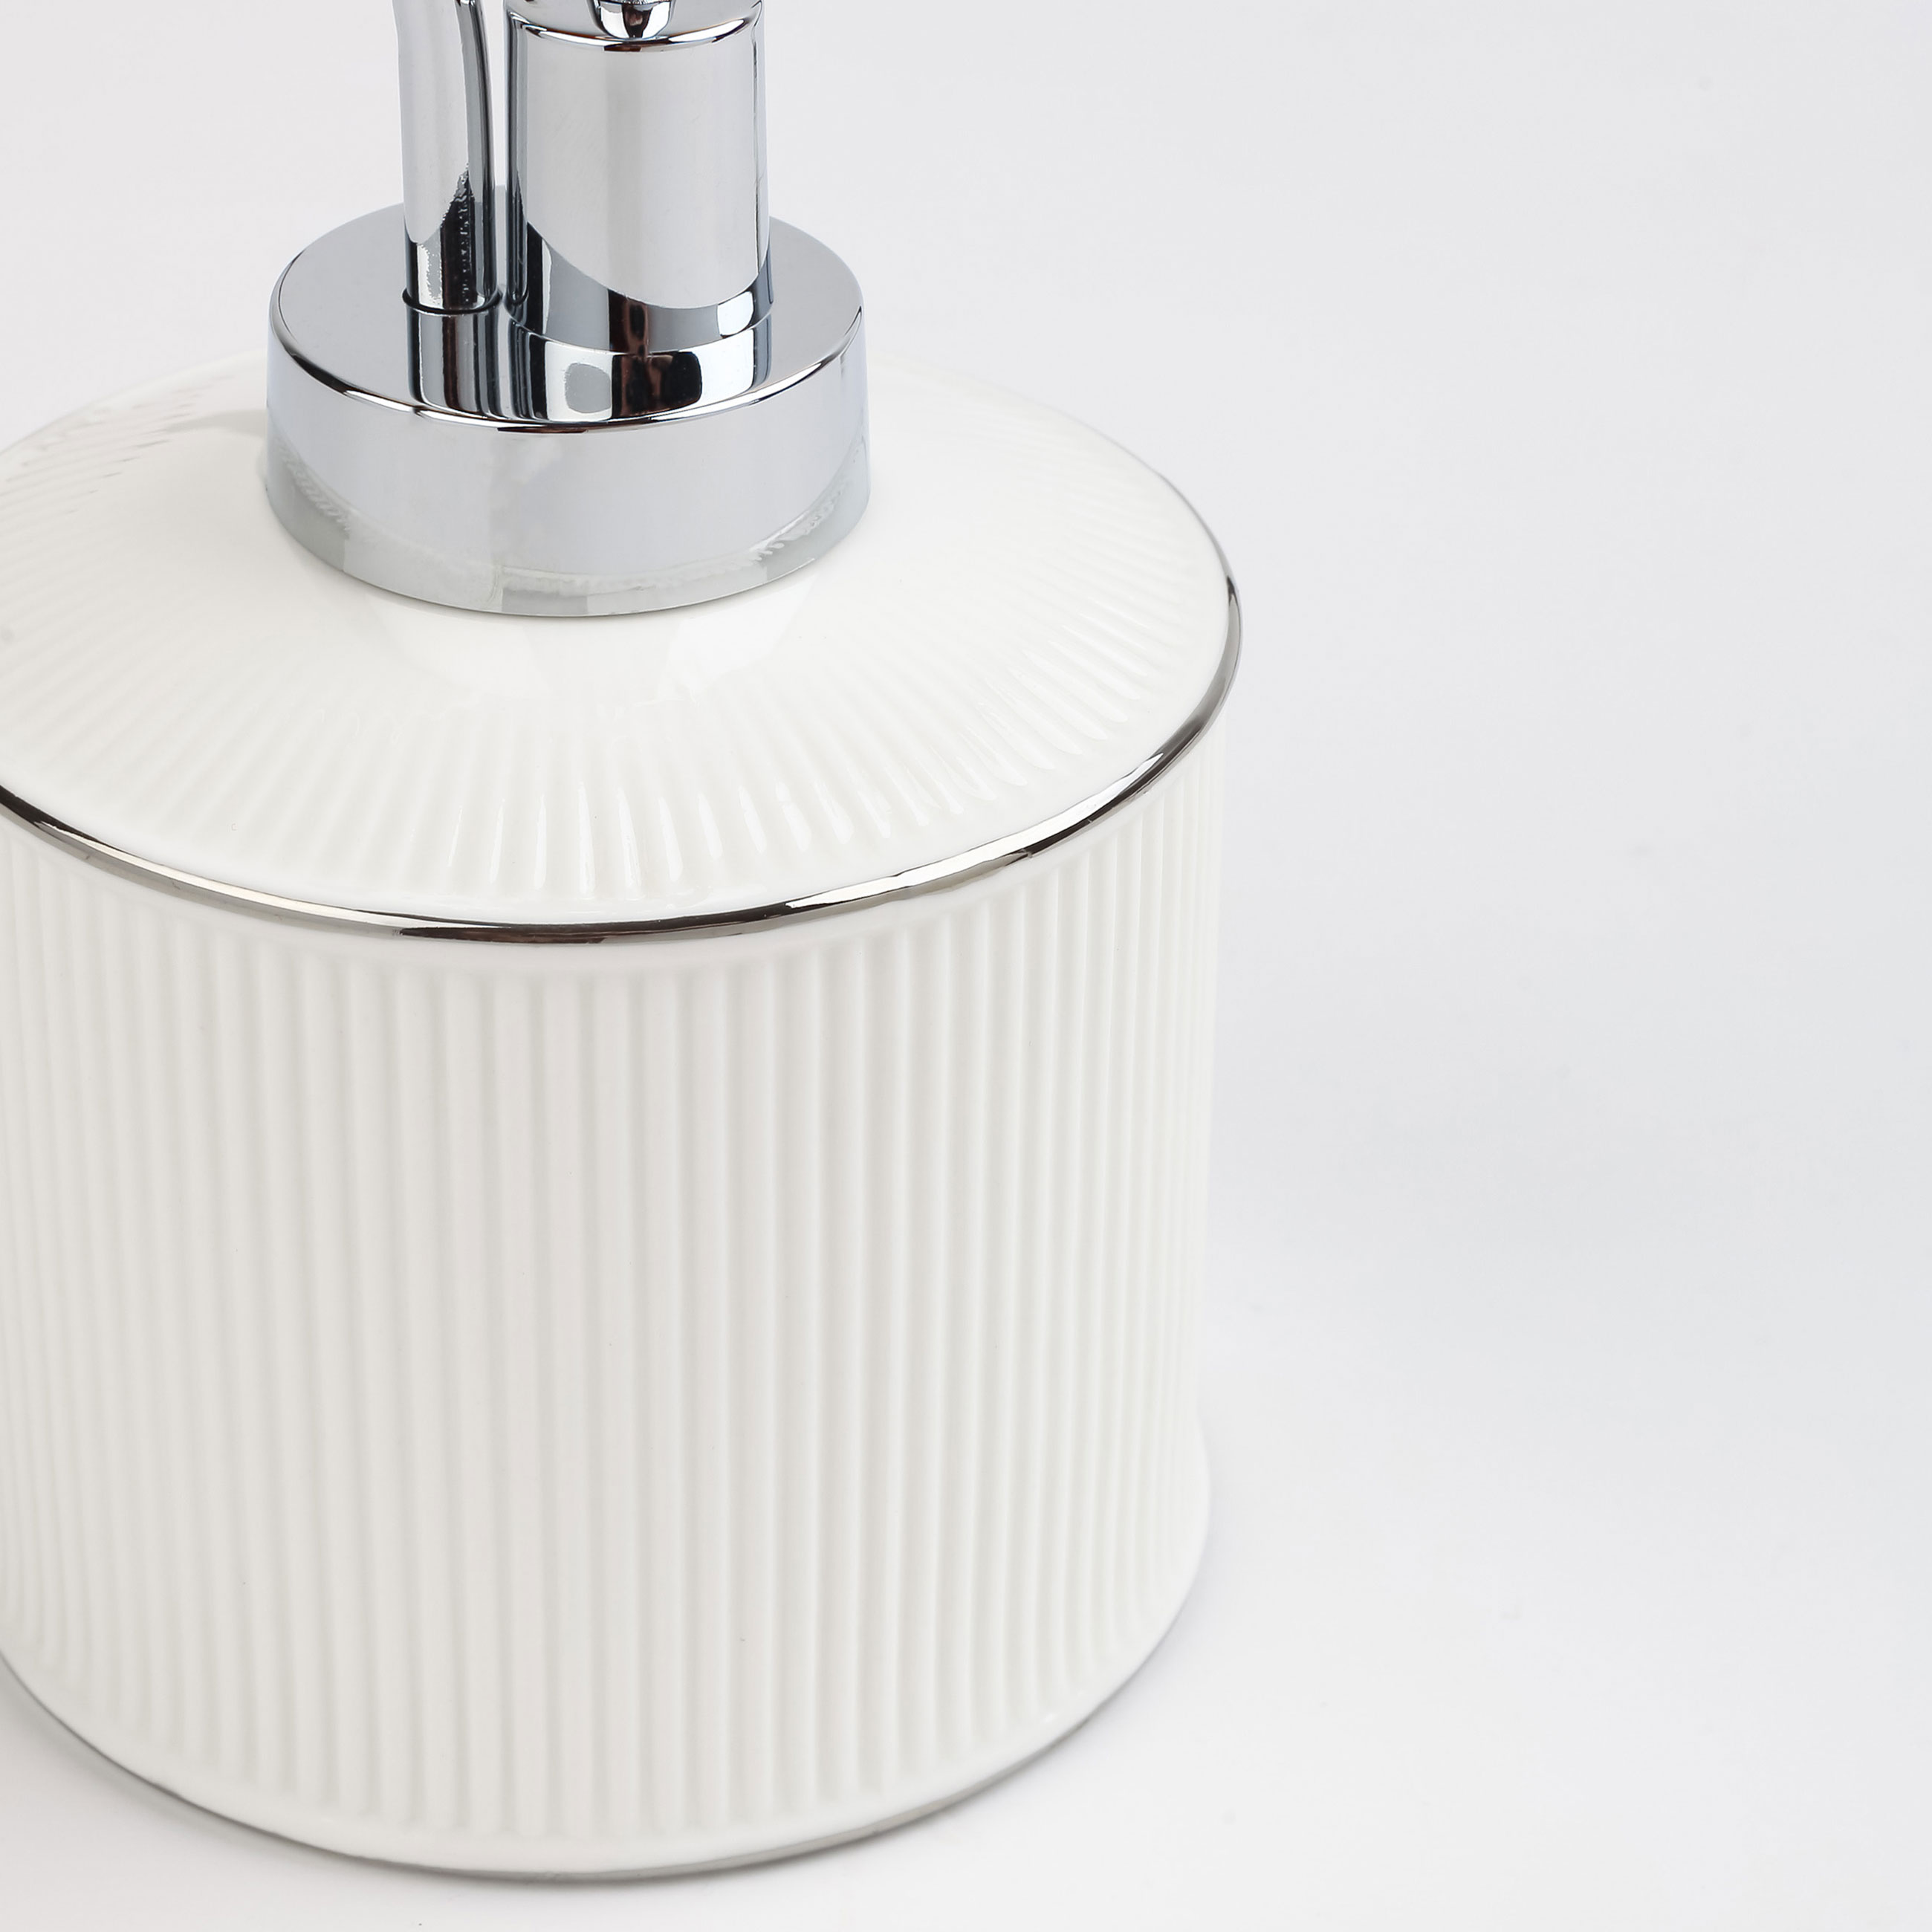 Liquid soap dispenser, 370 ml, ceramic / plastic, white, with silver edging, Kaliopa изображение № 4